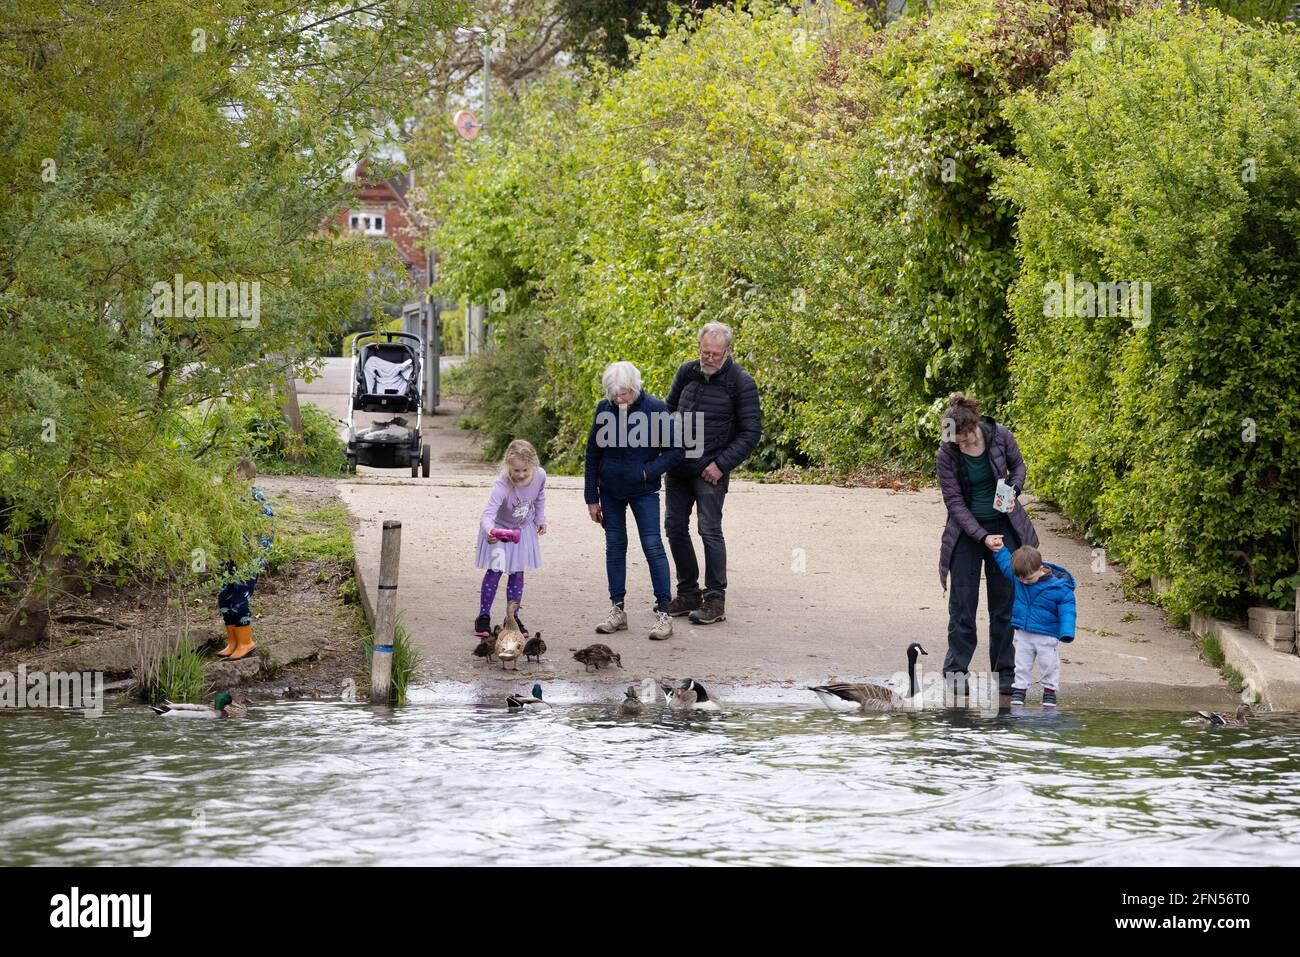 Famille Royaume-Uni, trois générations d'une famille nourrissant des canards et des oies en été sur la Tamise à Wallingford Oxfordshire Royaume-Uni. Gamme multigénération Banque D'Images